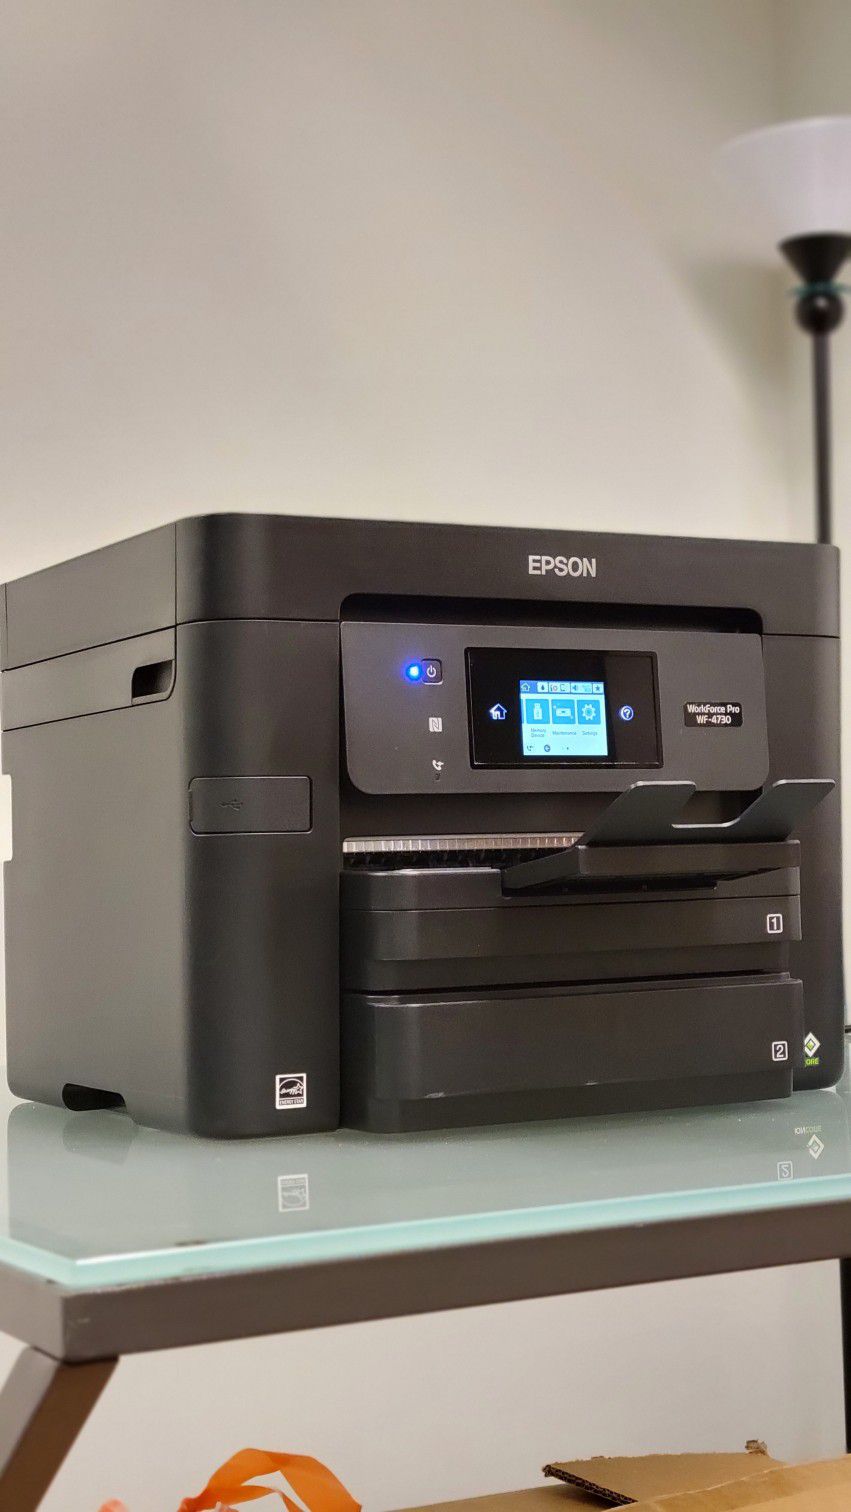 Epson WorkForce Pro WF-4730 Color Inkjet Printer Scanner Fax